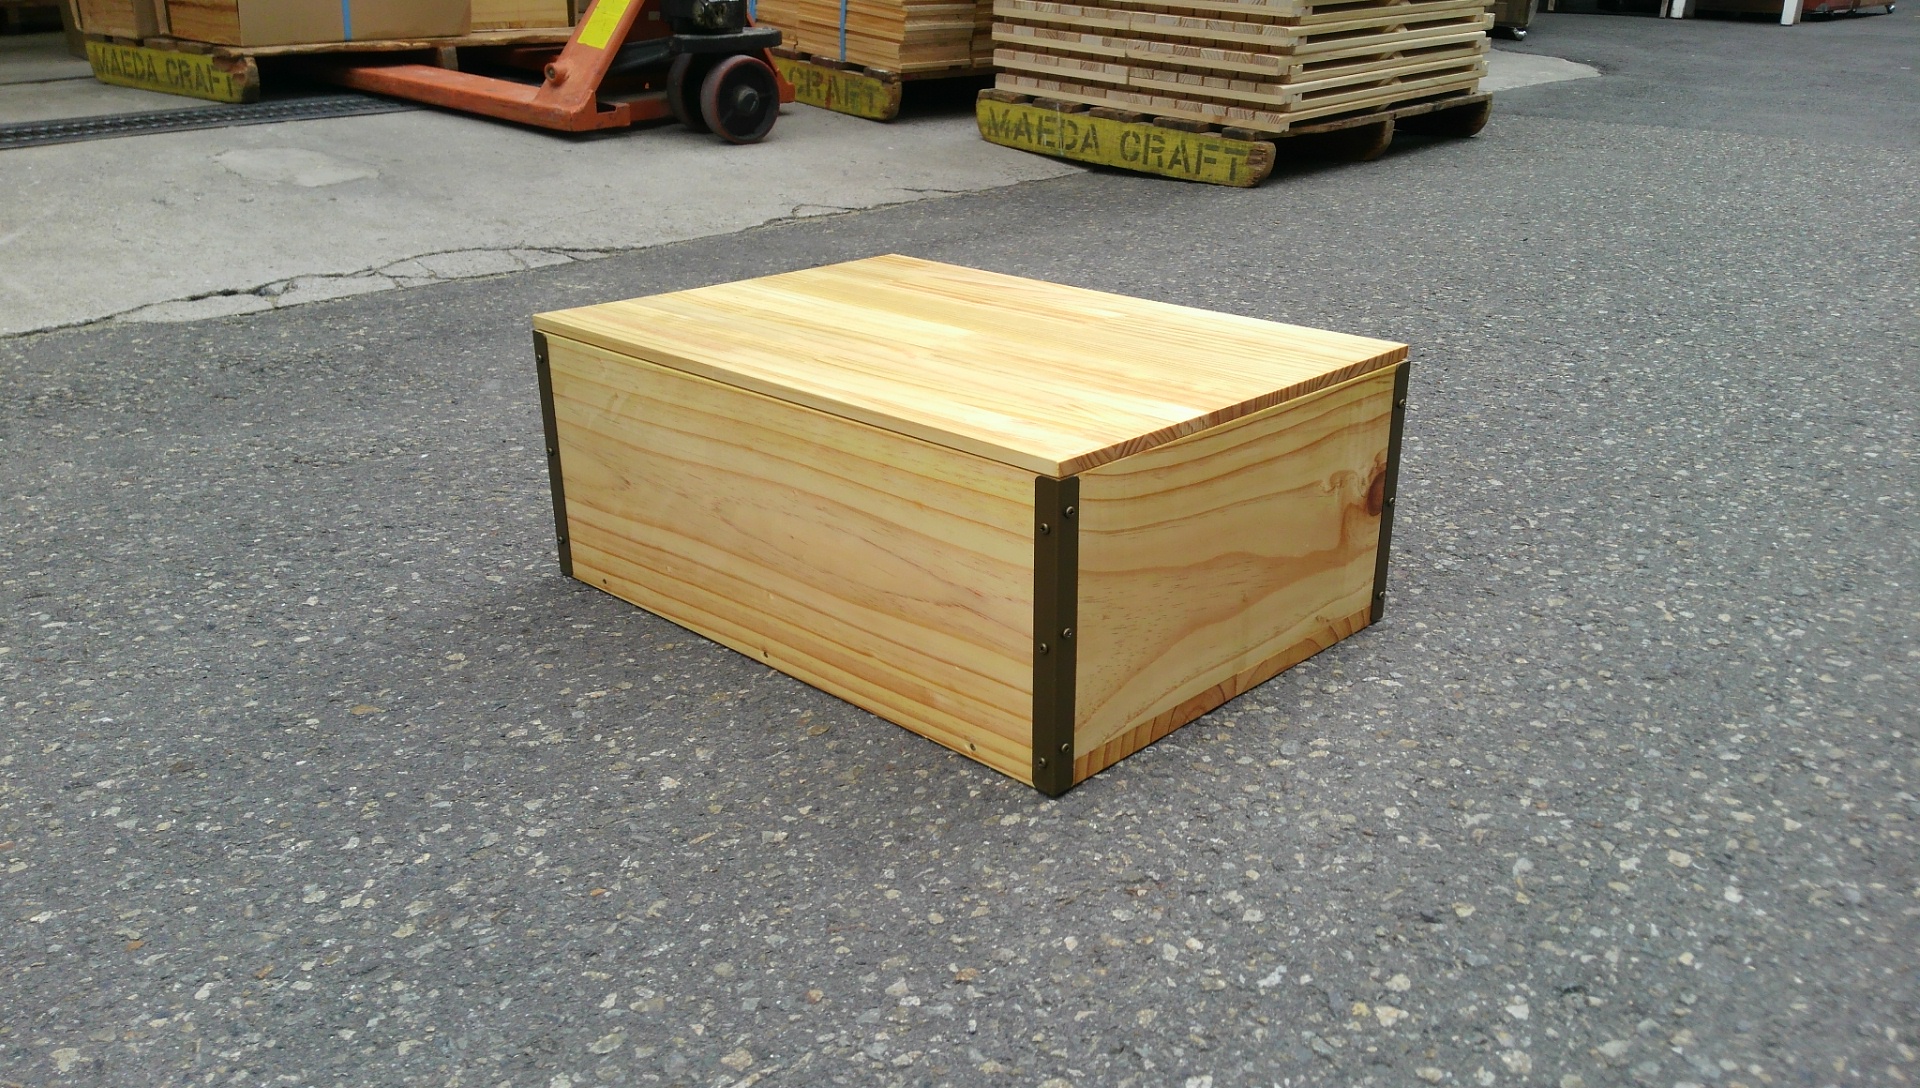 ワイン木箱 – 木箱、店舗什器など木製品の国産製造メーカーMAEDA CRAFT 